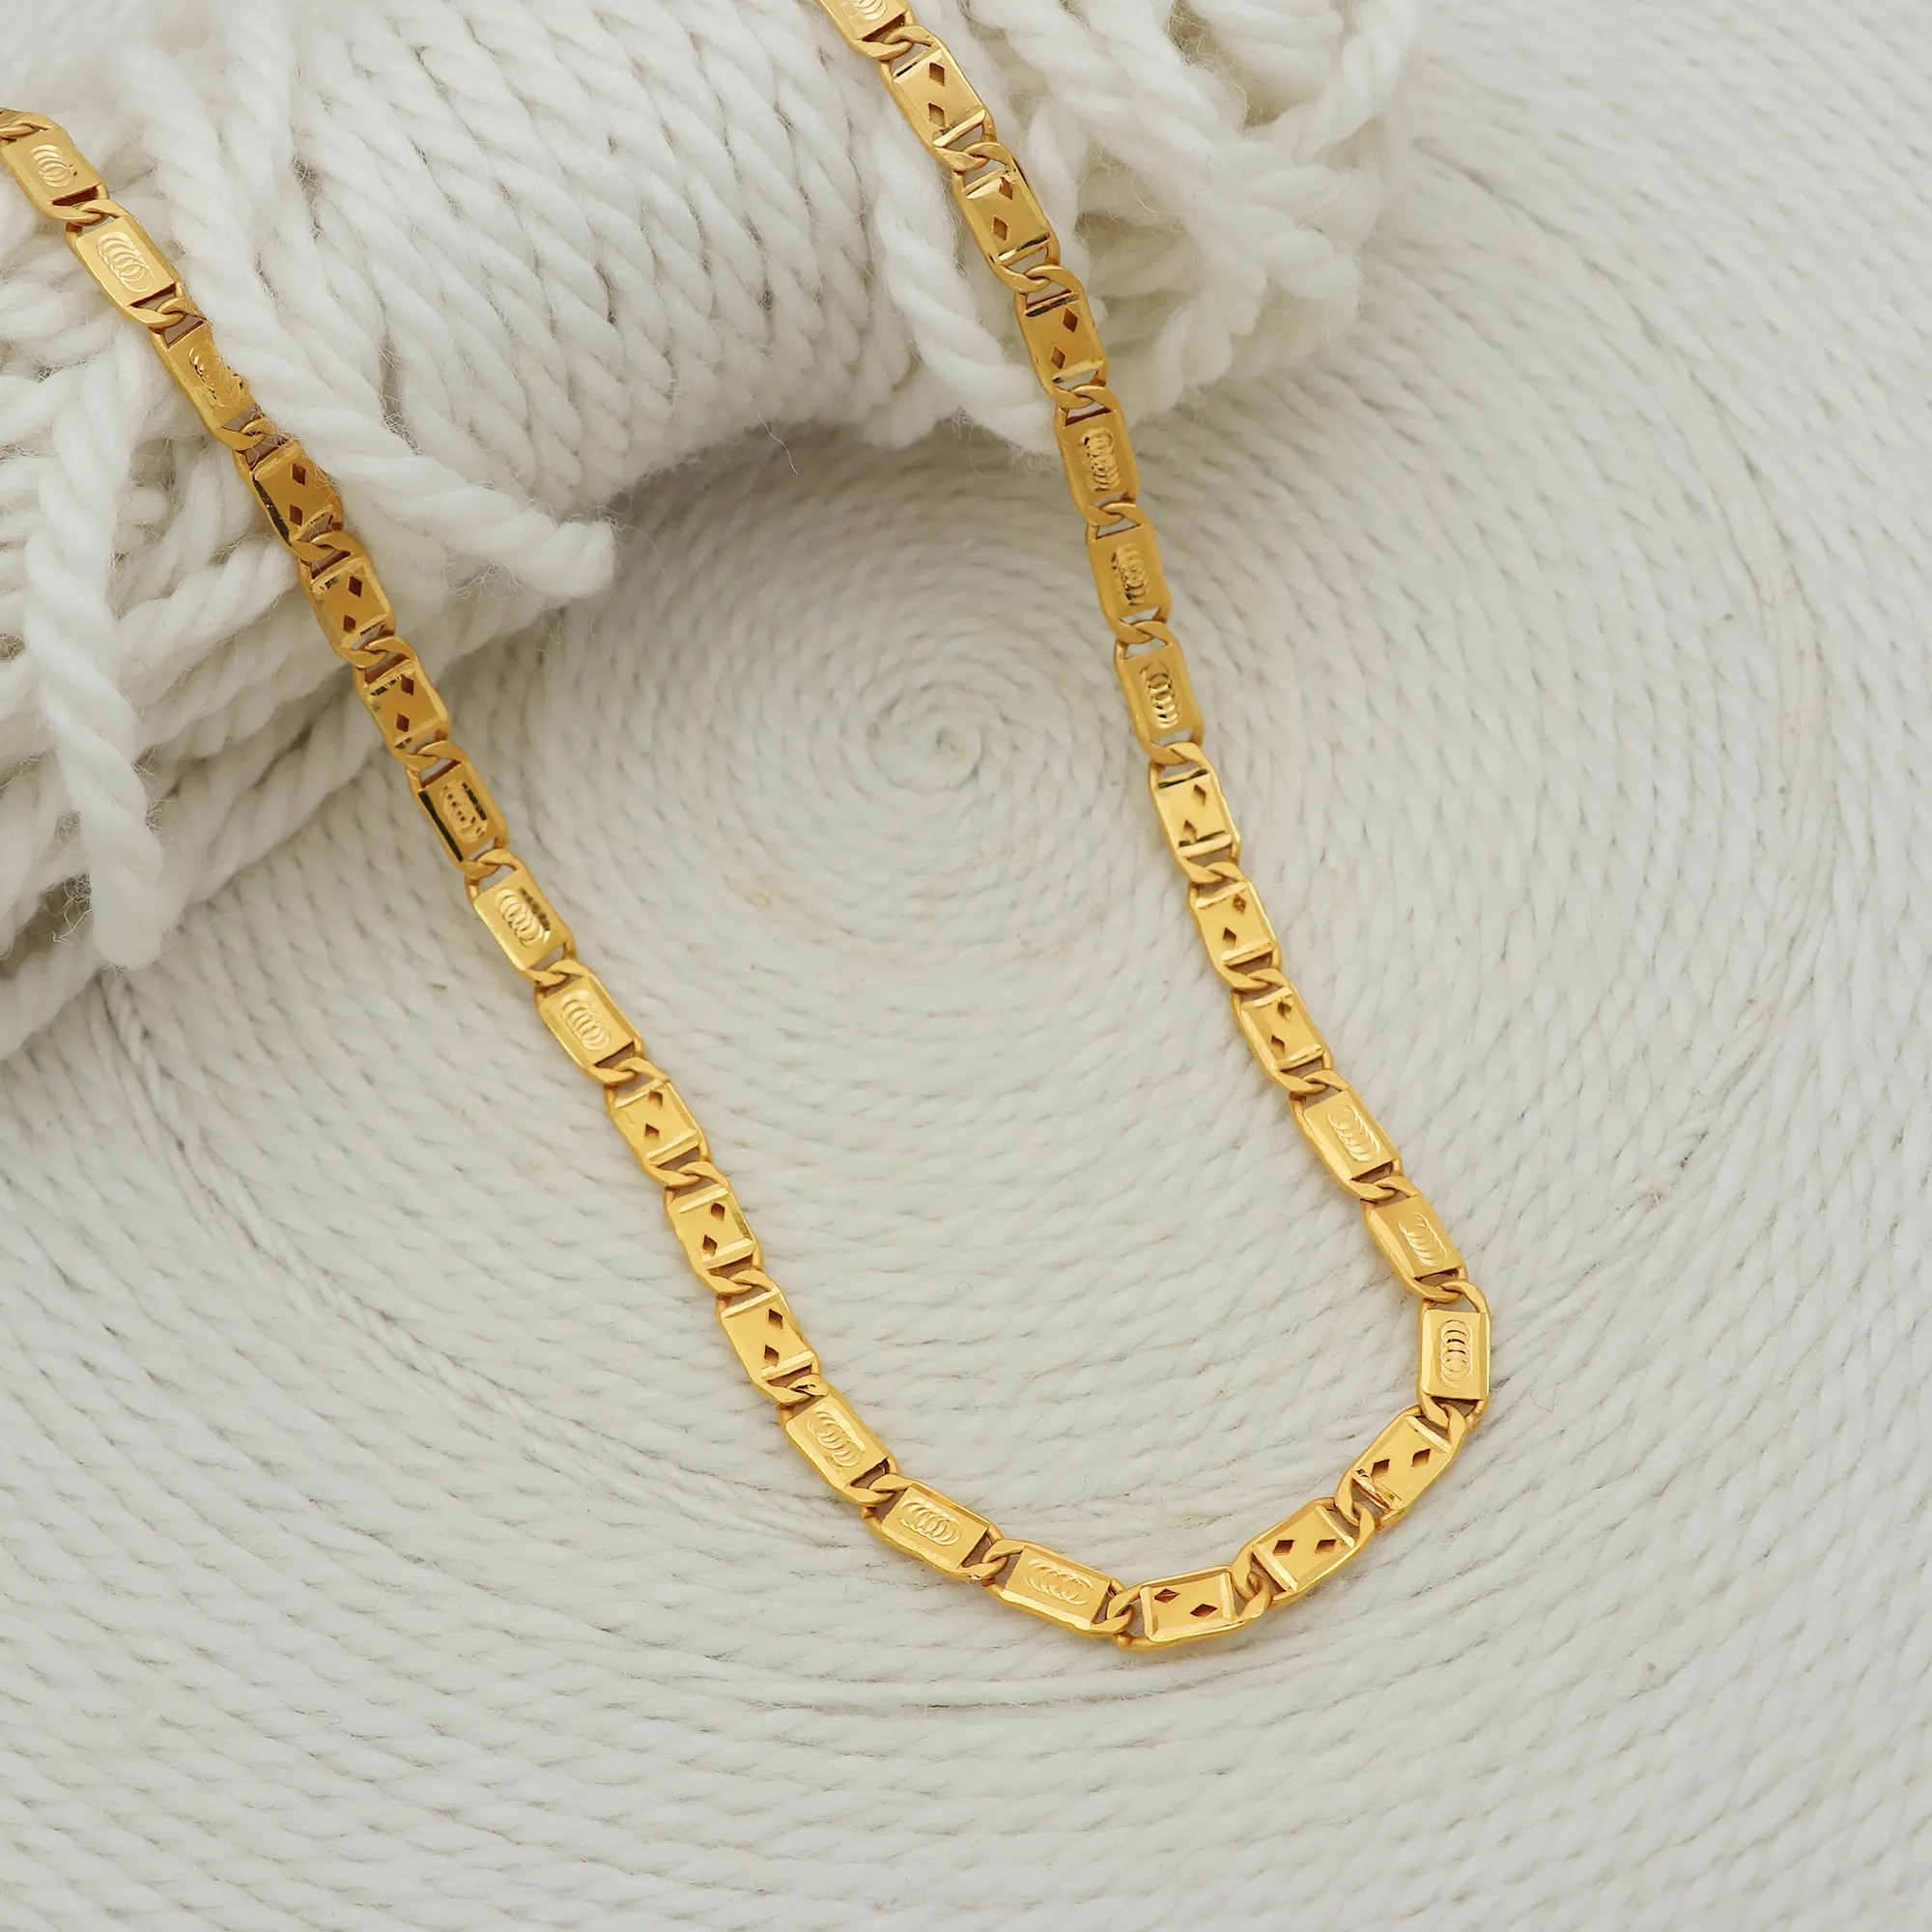 22 Karat Gelbgold Klingen kette Unisex Halskette 23 "lang 6 mm Breite Herren-und Damen ketten geschenke Verwenden Sie Daily Wear Schmuck